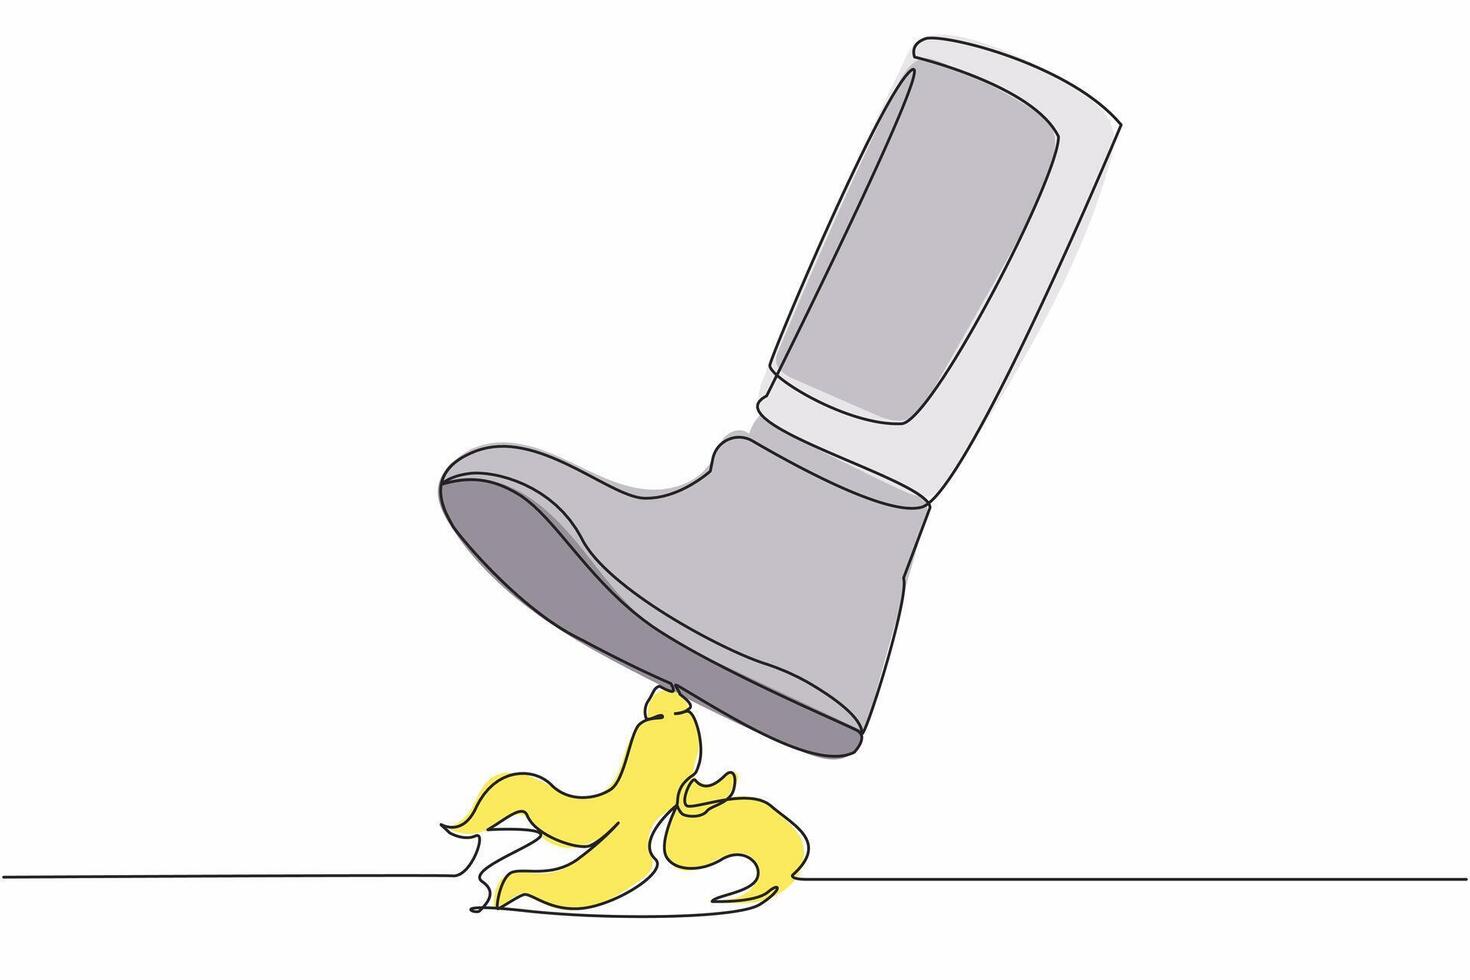 kontinuierlich einer Linie Zeichnung jung Astronaut Bein Schritt auf Banane schälen. unmittelbar bevorstehend Achtung, Banane schälen unter den Füßen. Wissenschaft Risiko Konzept. Kosmonaut äußere Raum. Single Linie Grafik Design Vektor Illustration